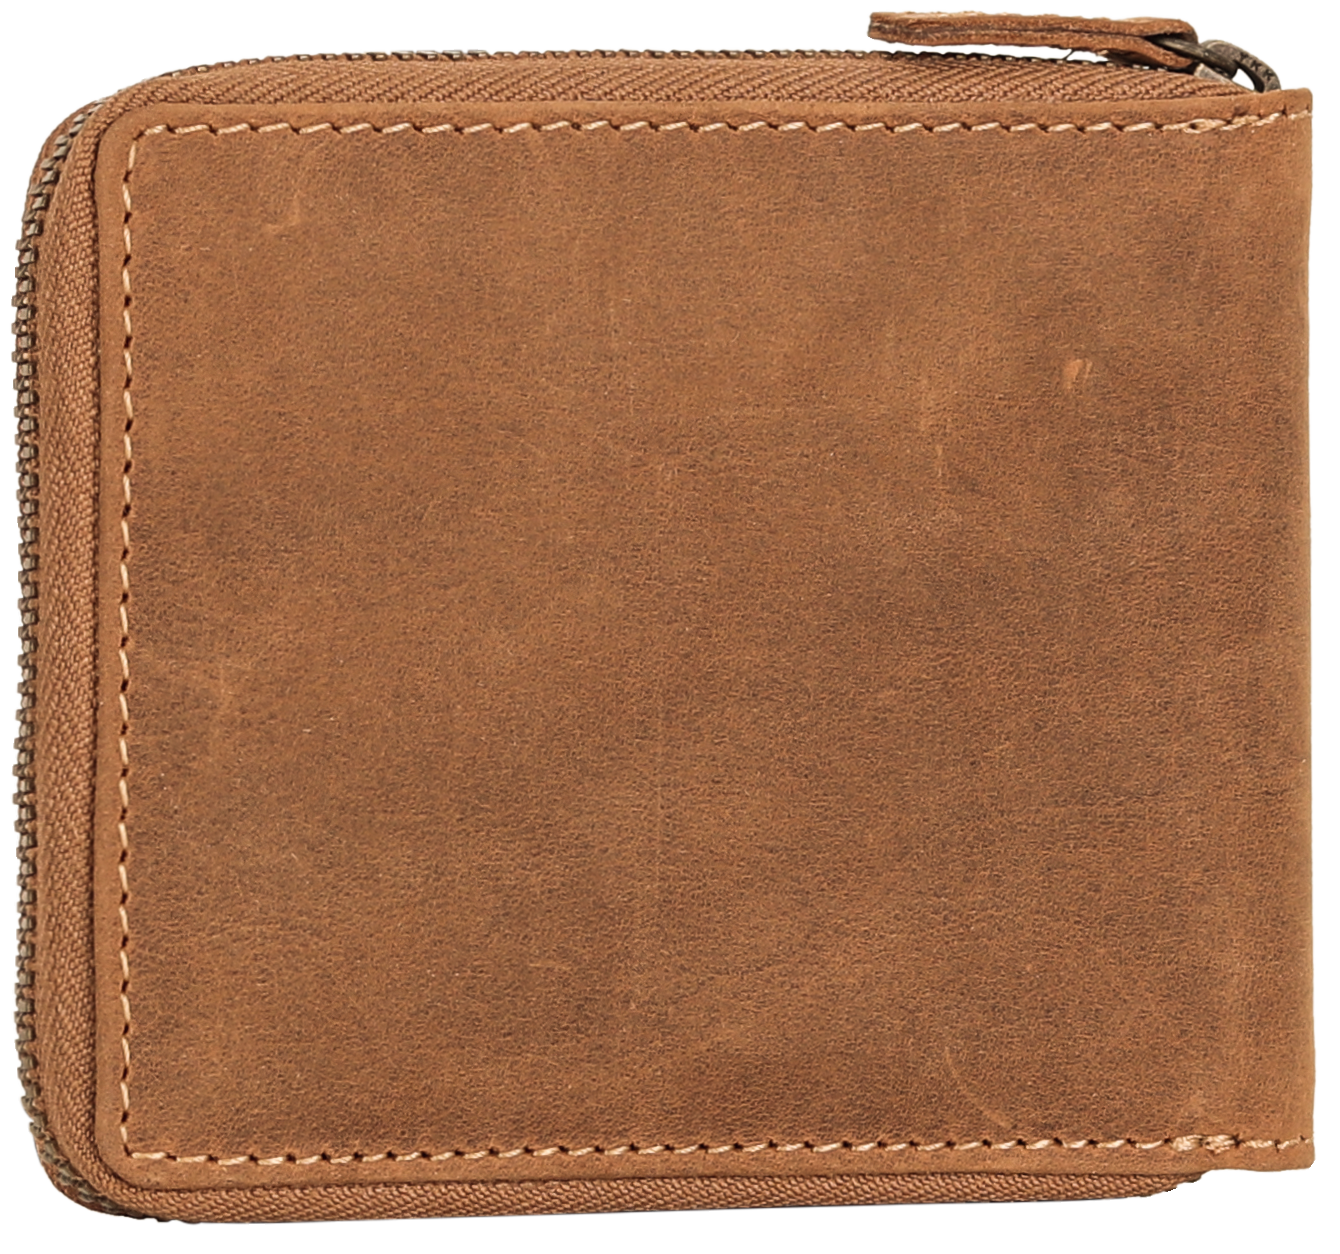 MET Hunter Leather Zip Around Wallet